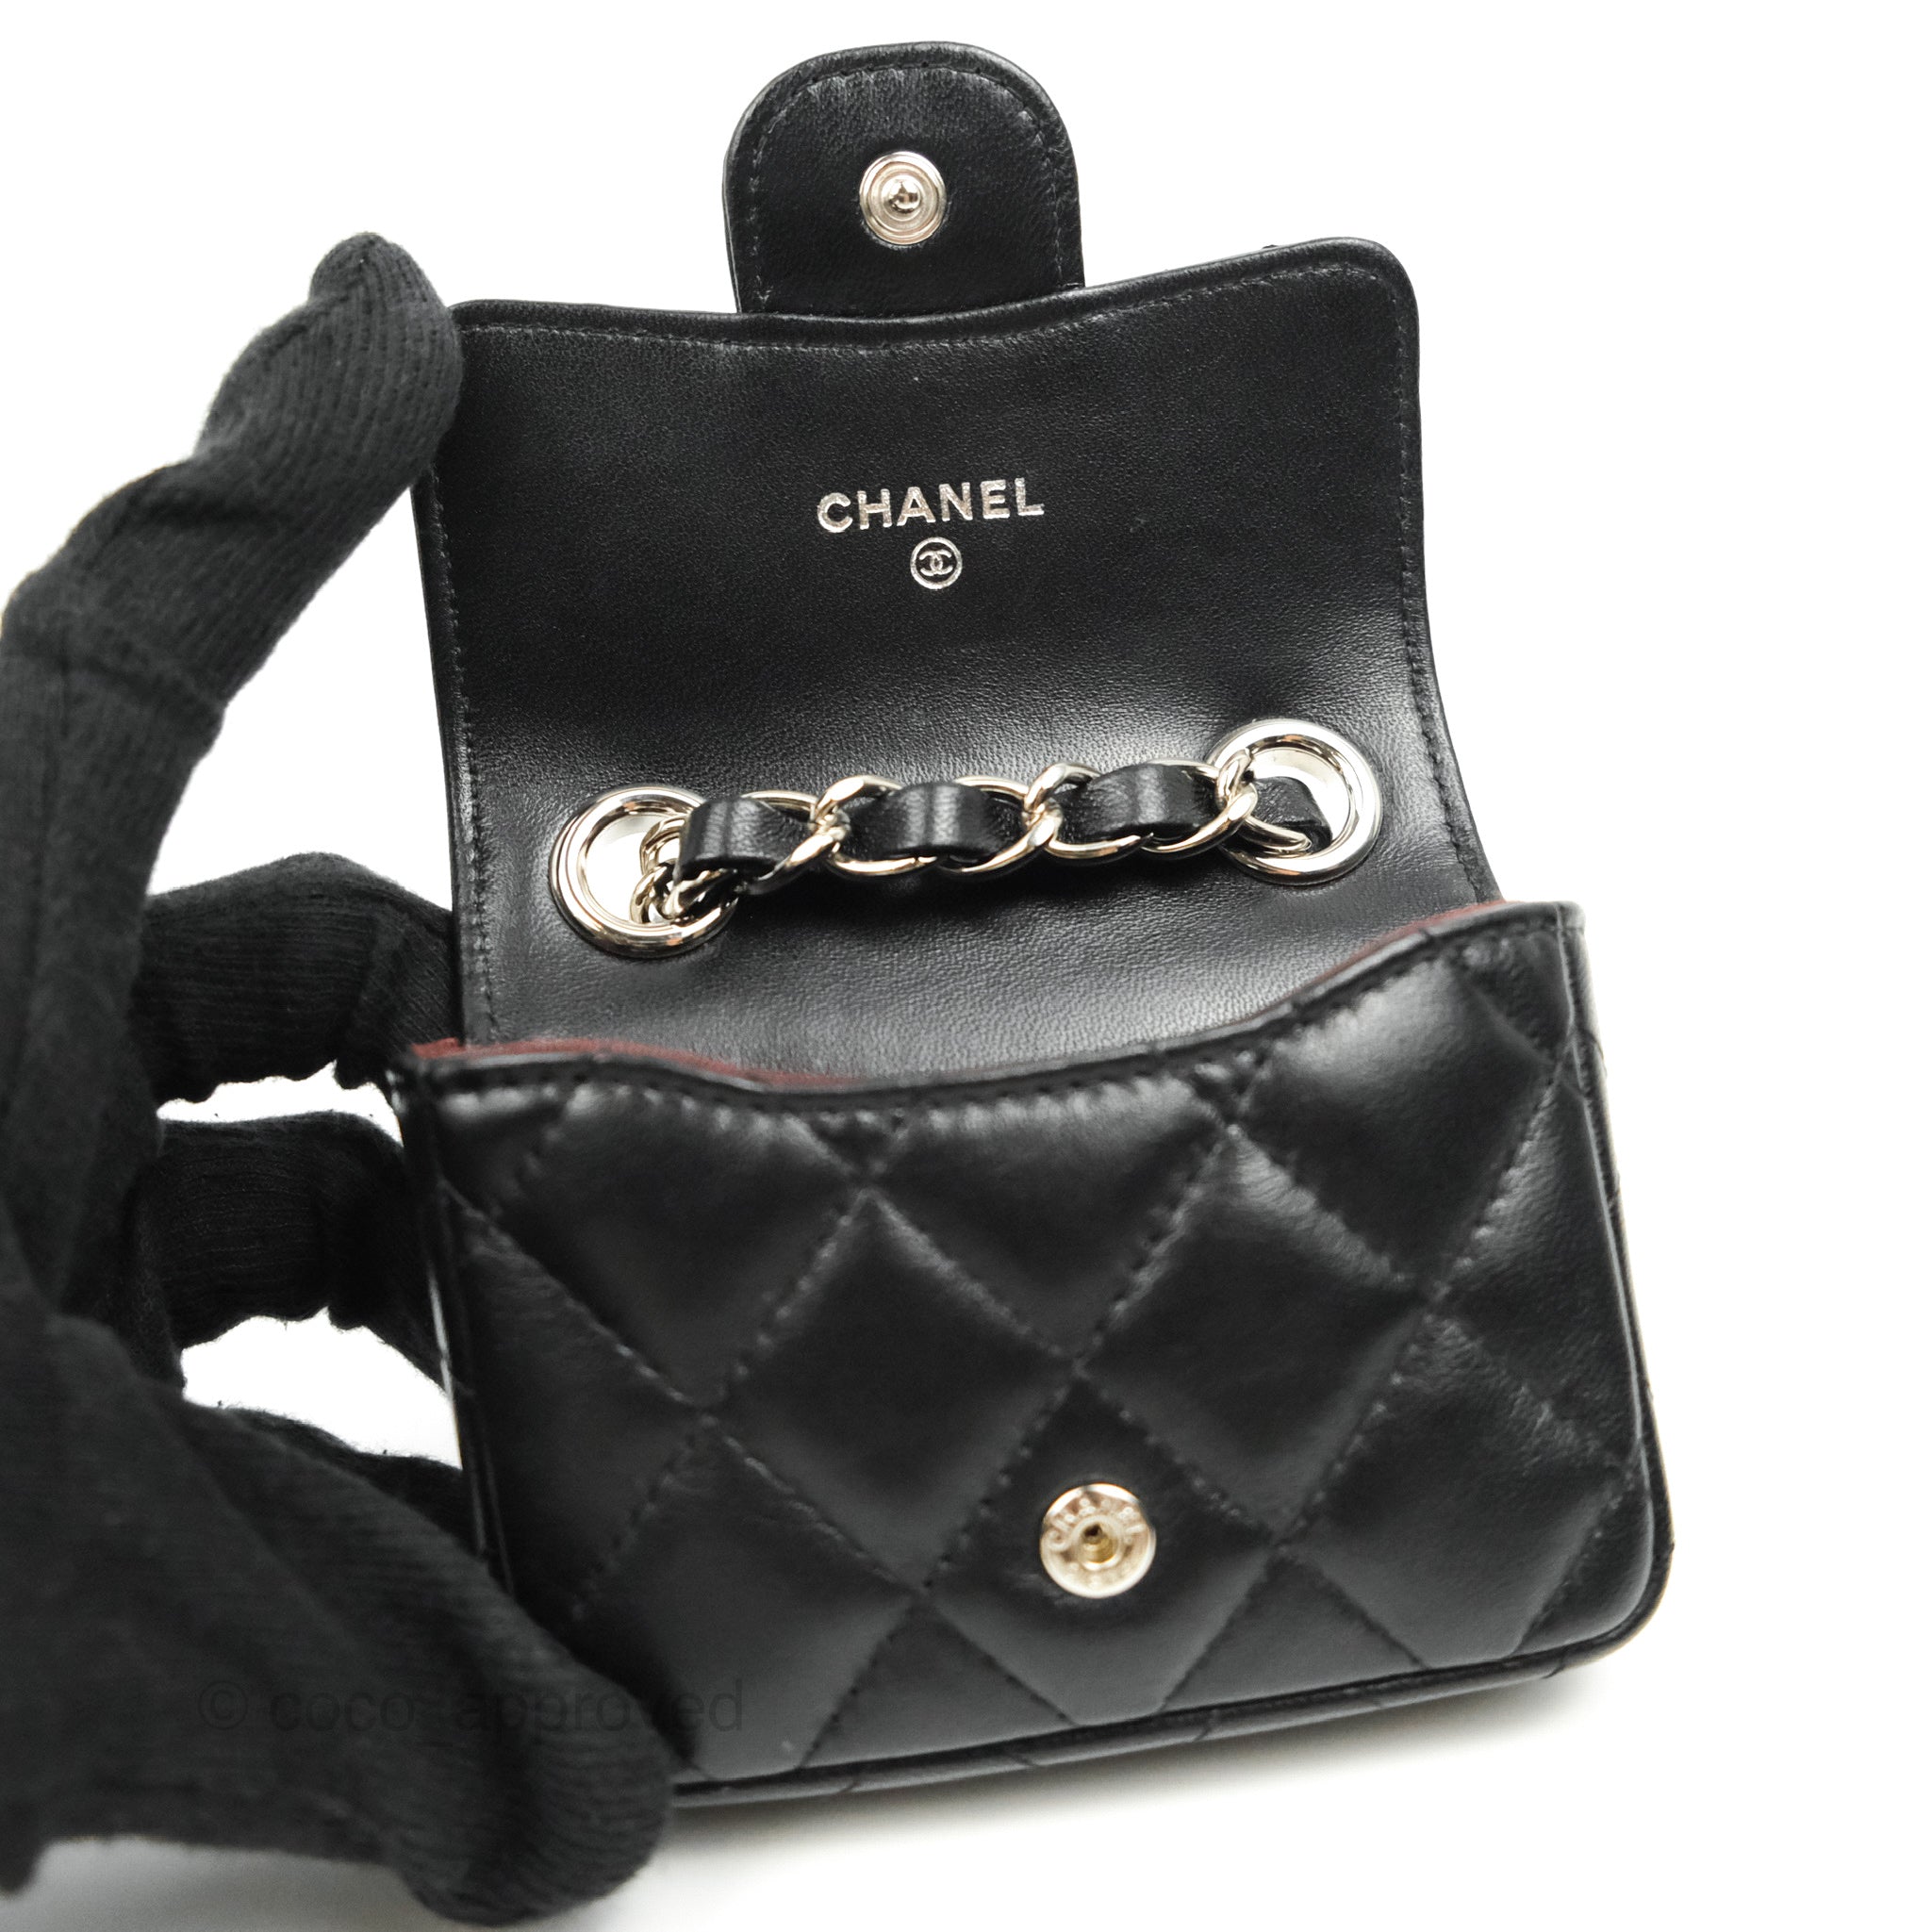 Chanel woc black lambskin silver hardware